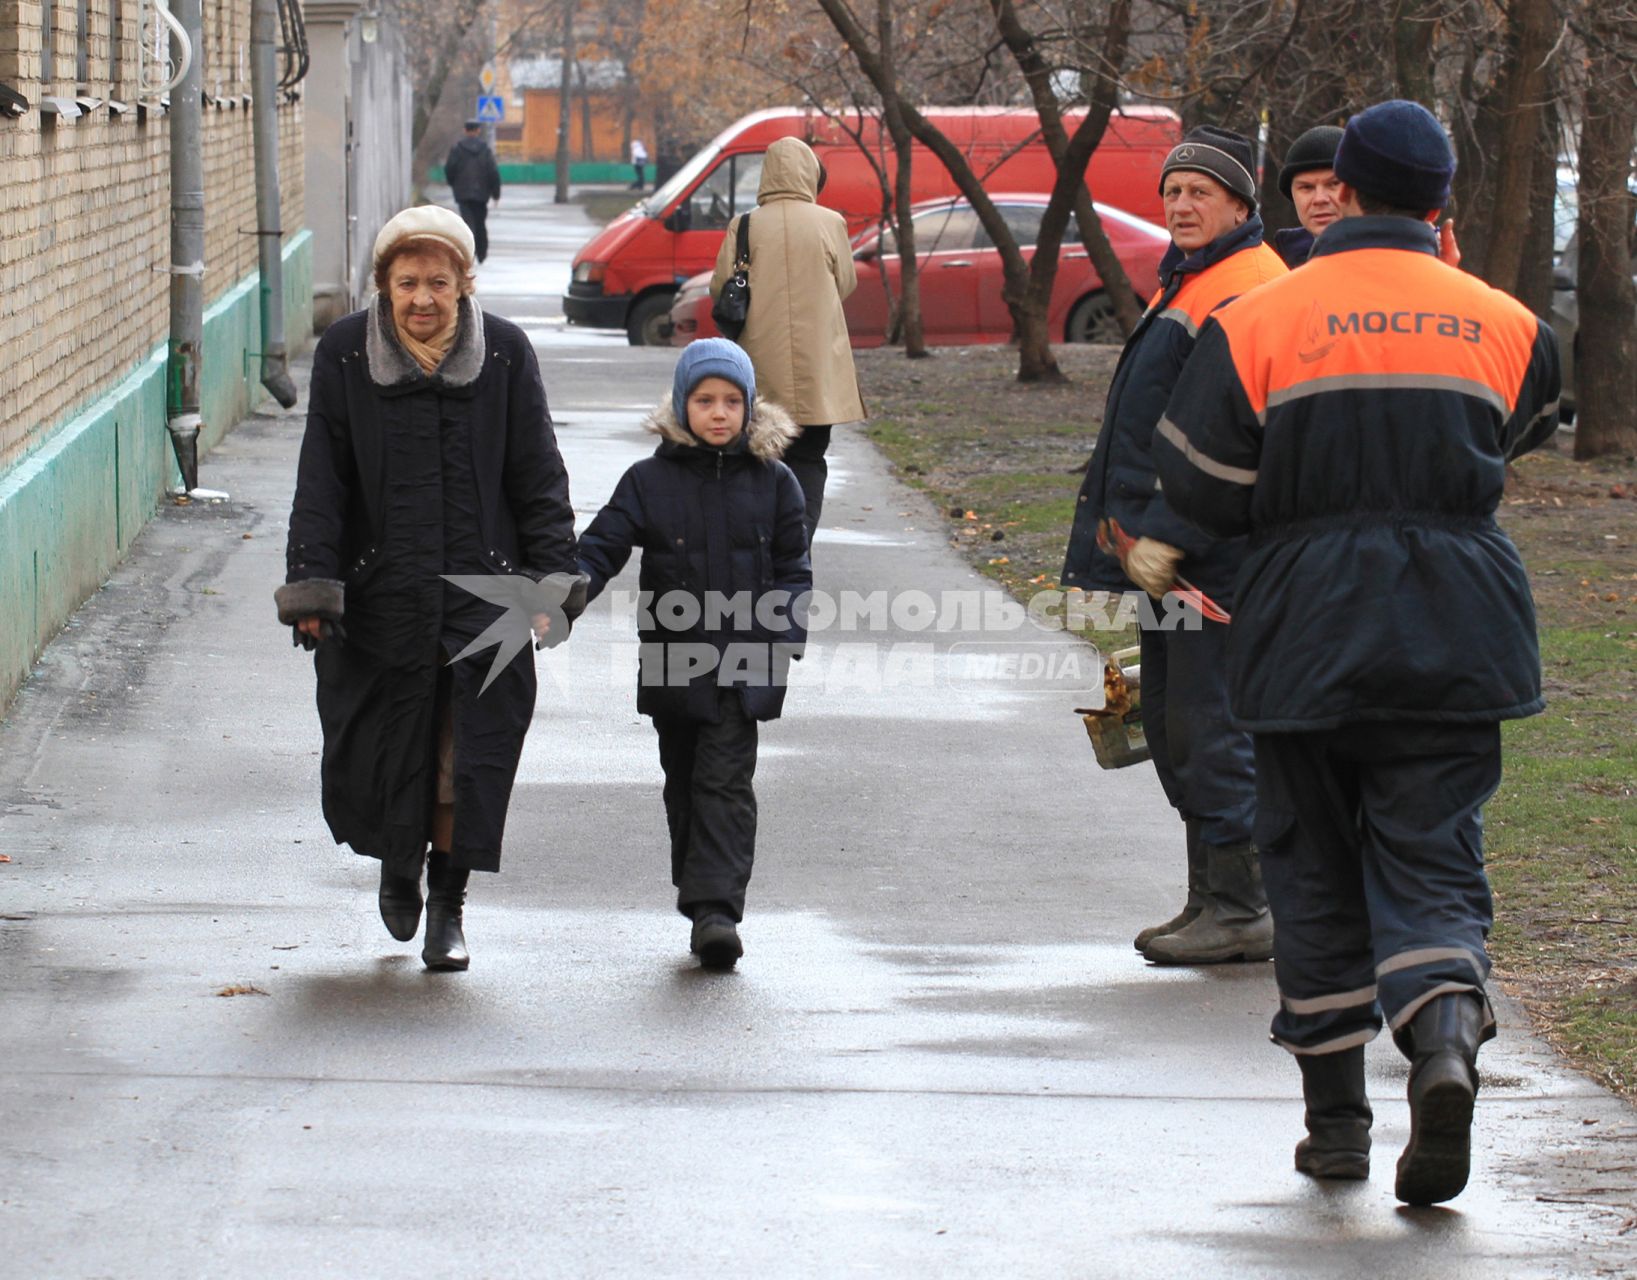 Бабушка с внуком идет по улице, мимо проходят рабочие из МОСГАЗа. 5 декабря 2011 года.